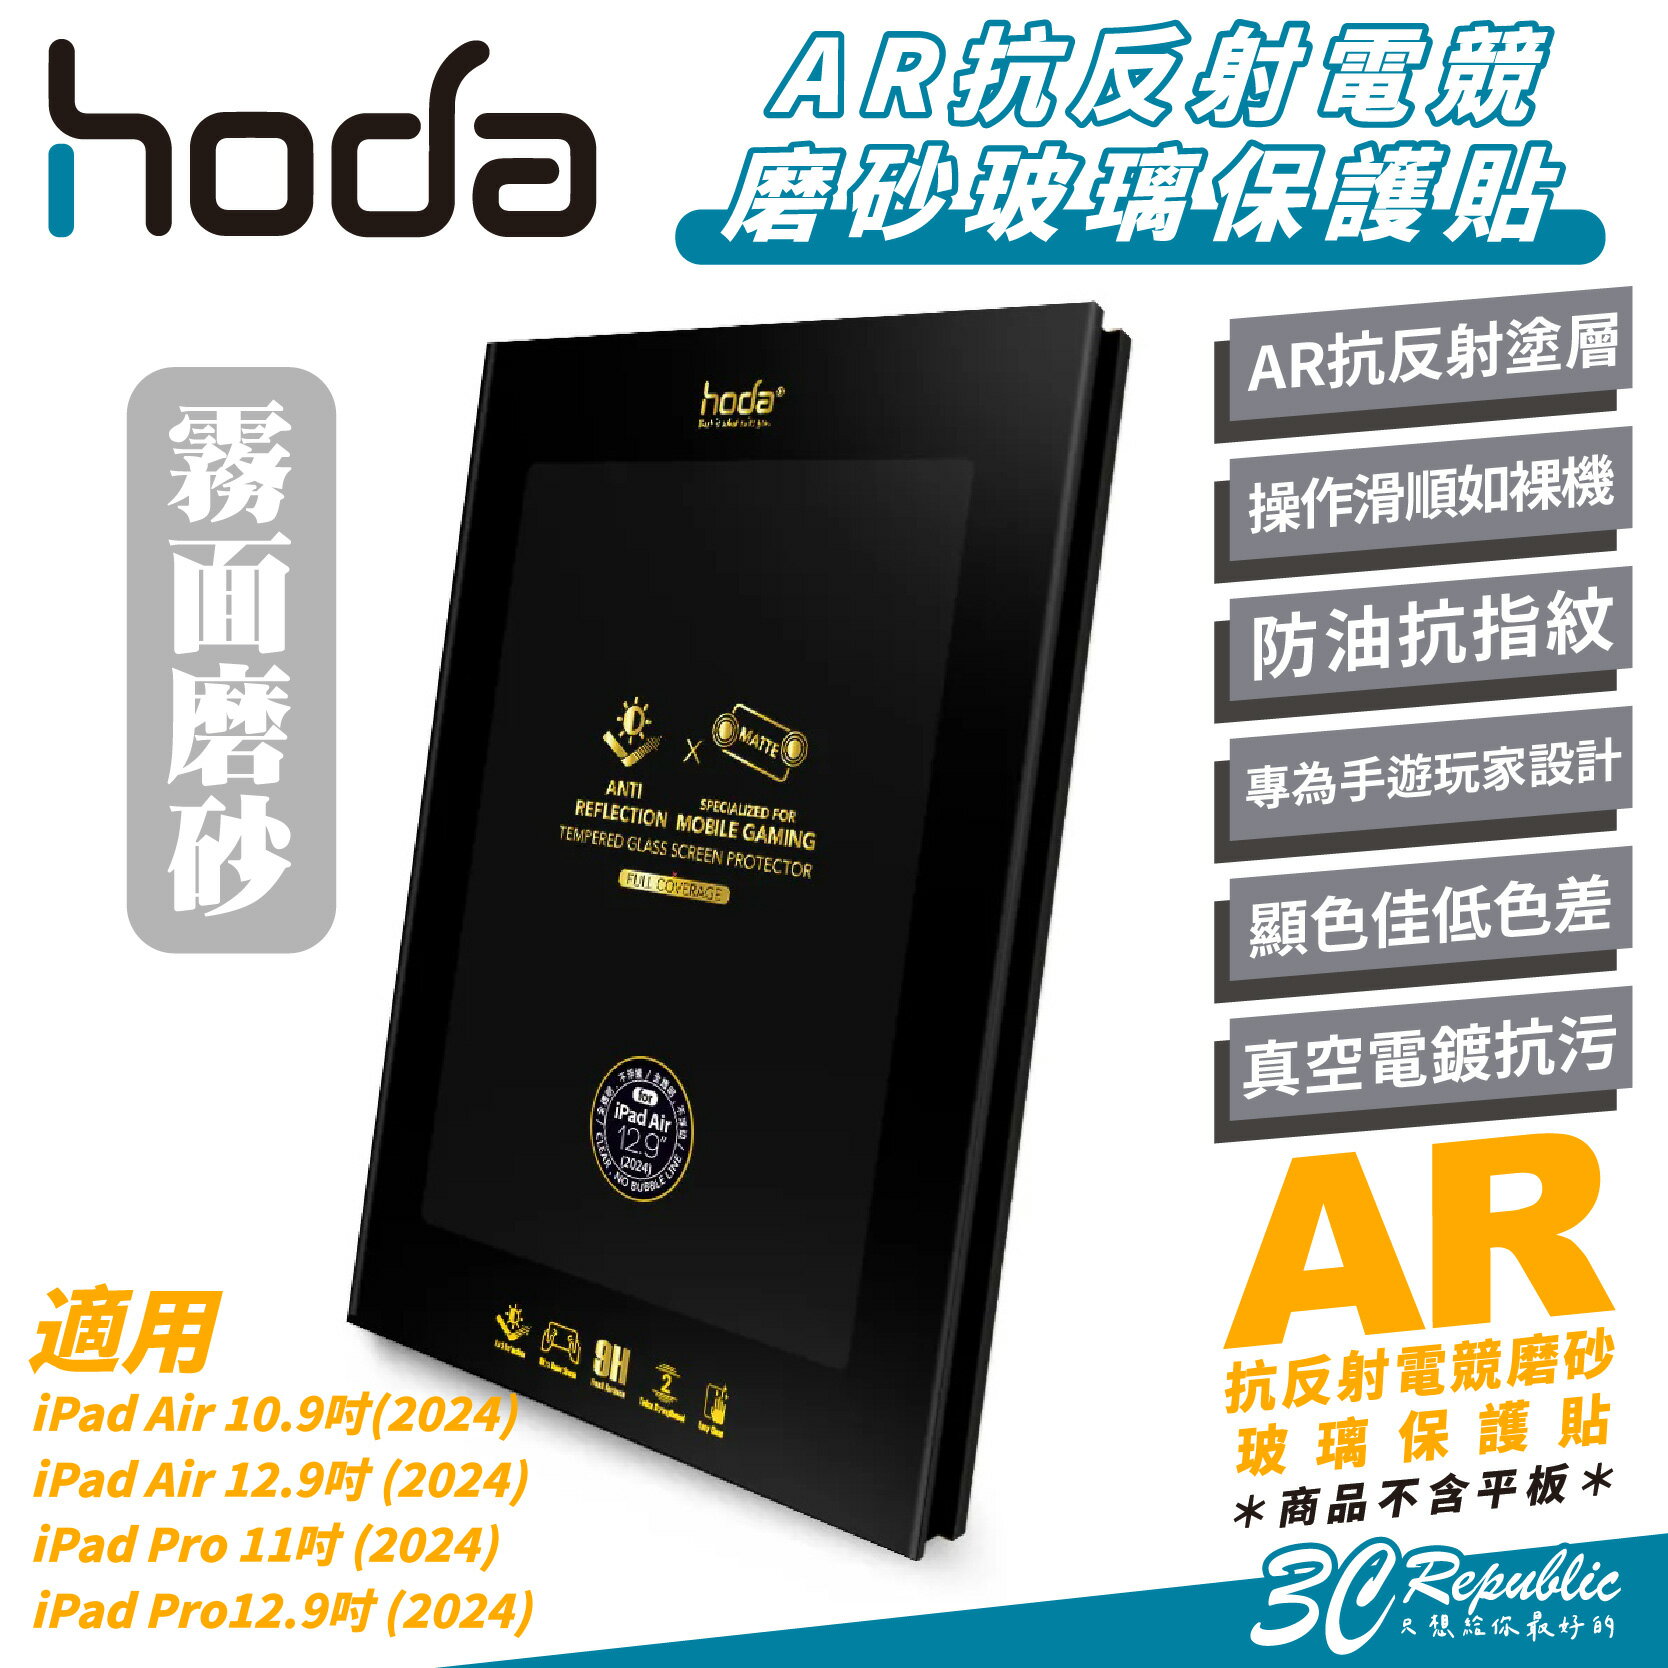 Hoda AR 霧面 抗反射 9H 電競 磨砂 玻璃貼 保護貼 螢幕貼 適 iPad Air 6 Pro 11 13 吋【APP下單8%點數回饋】